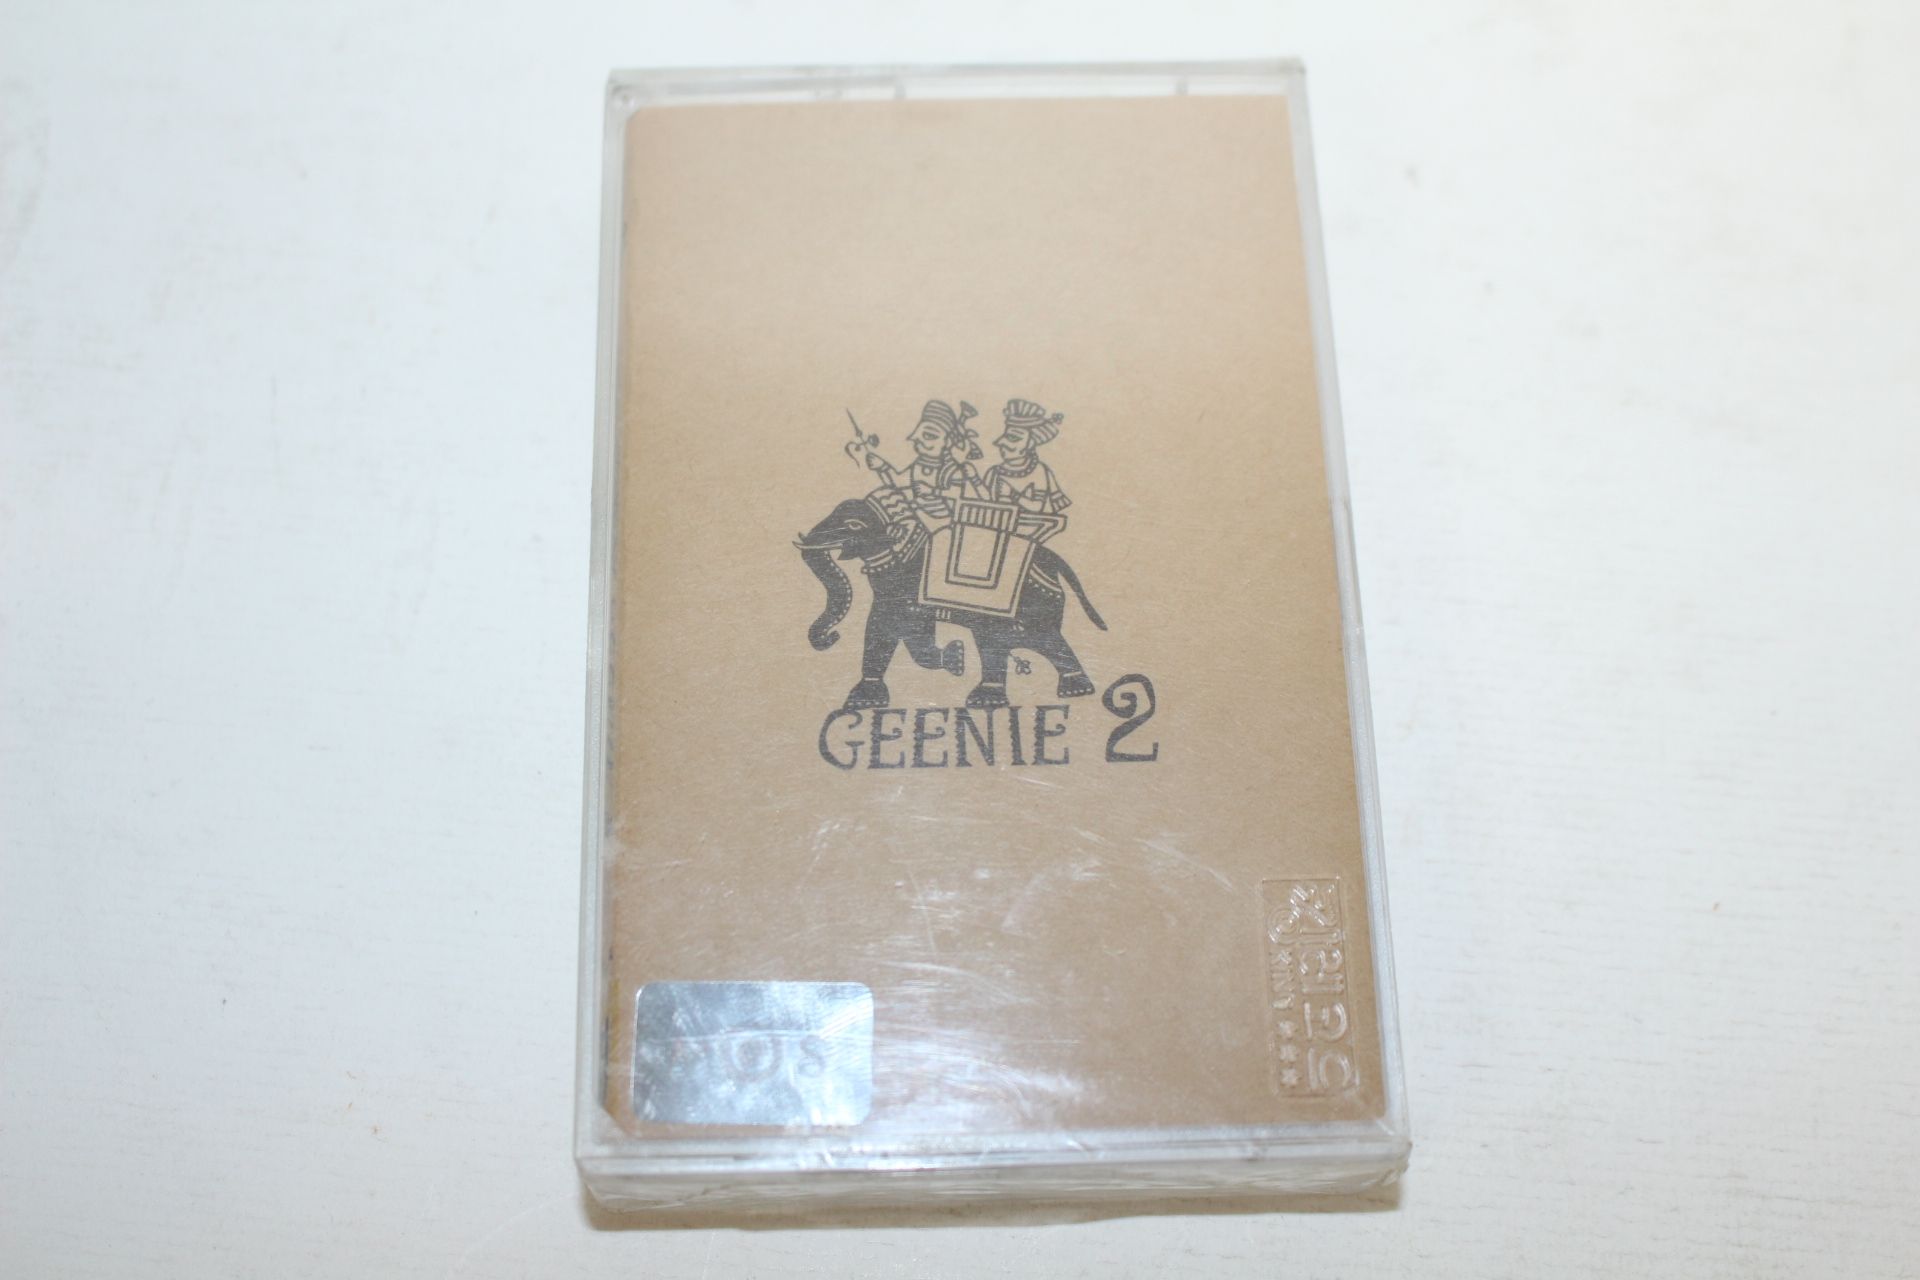 1483-근대사 미개봉 테이프 GREEN 2